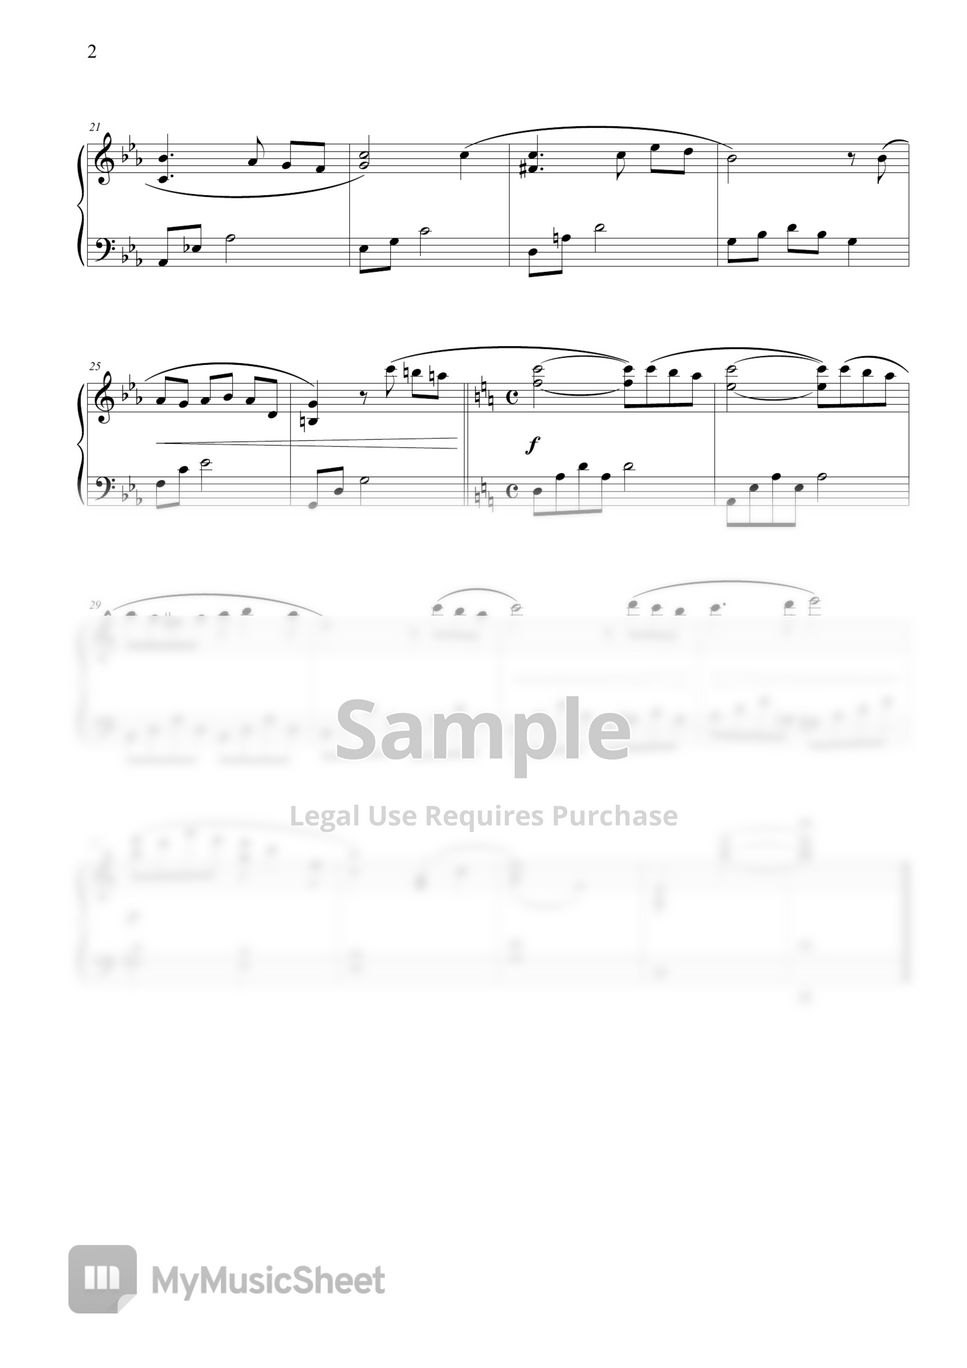 히사이시 조 - Nostalgia (쉬운 버전) by THIS IS PIANO